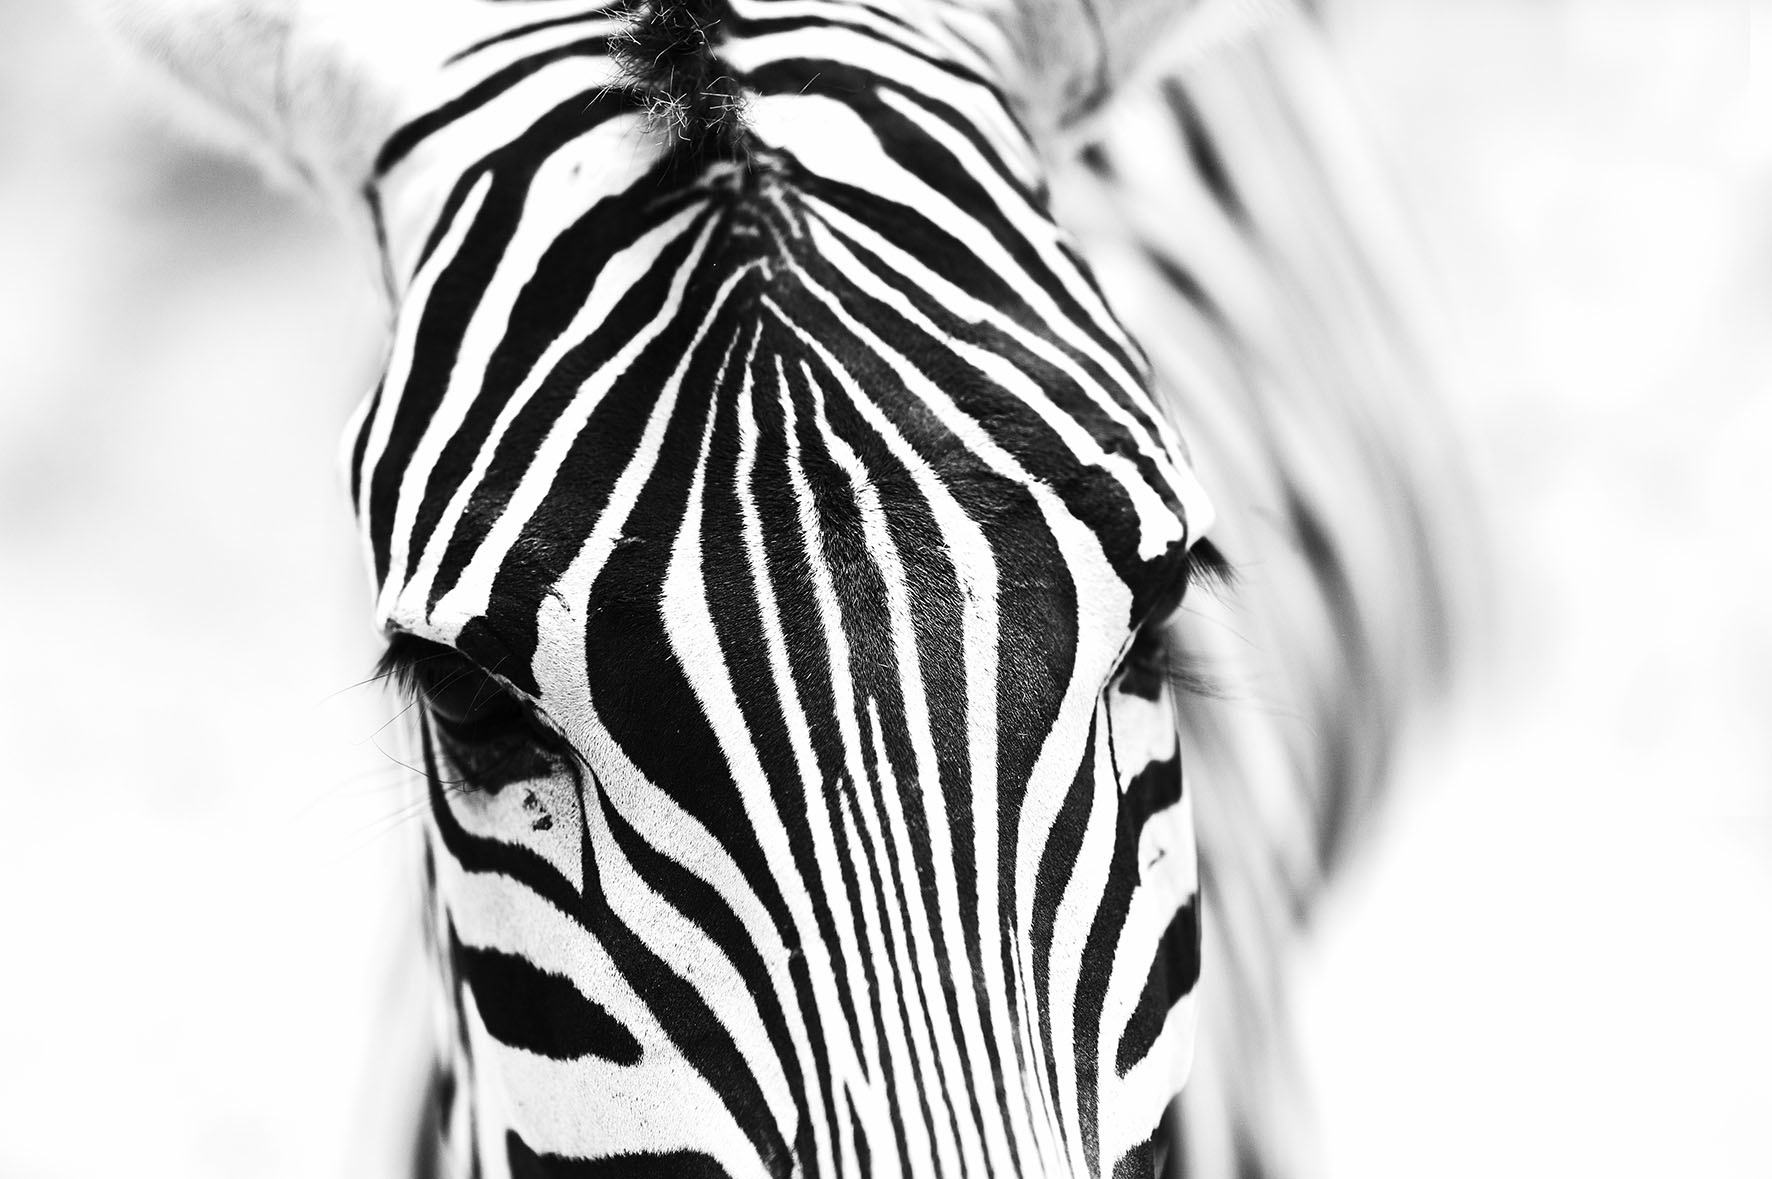 Zebra fullsize